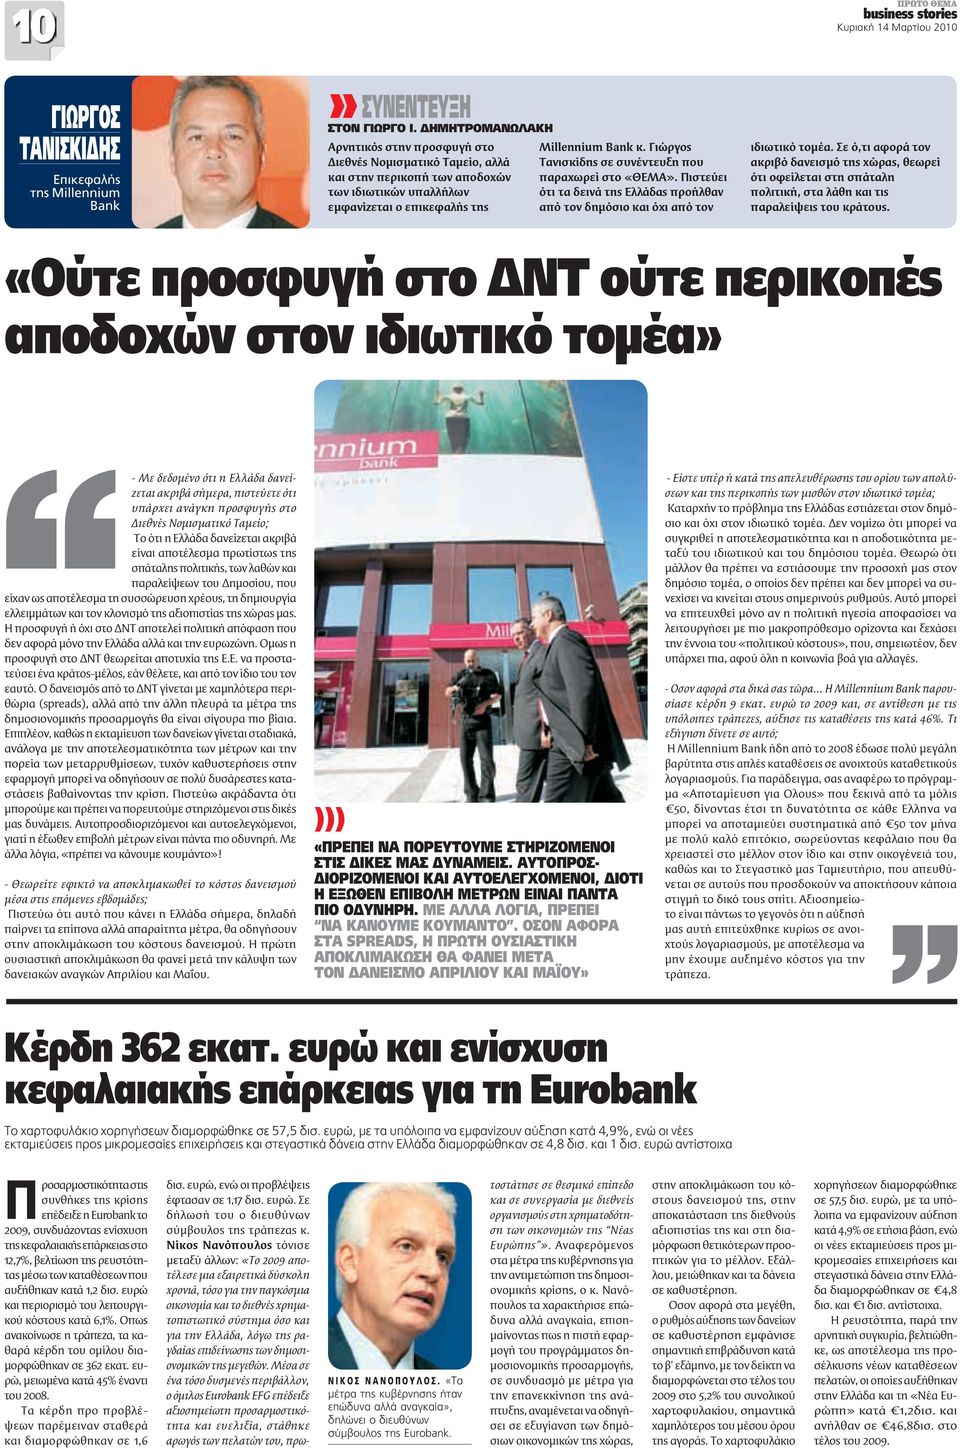 Γιώργος Τανισκίδης σε συνέντευξη που παραχωρεί στο «ΘΕΜΑ». Πιστεύει ότι τα δεινά της Ελλάδας προήλθαν από τον δημόσιο και όχι από τον ιδιωτικό τομέα.